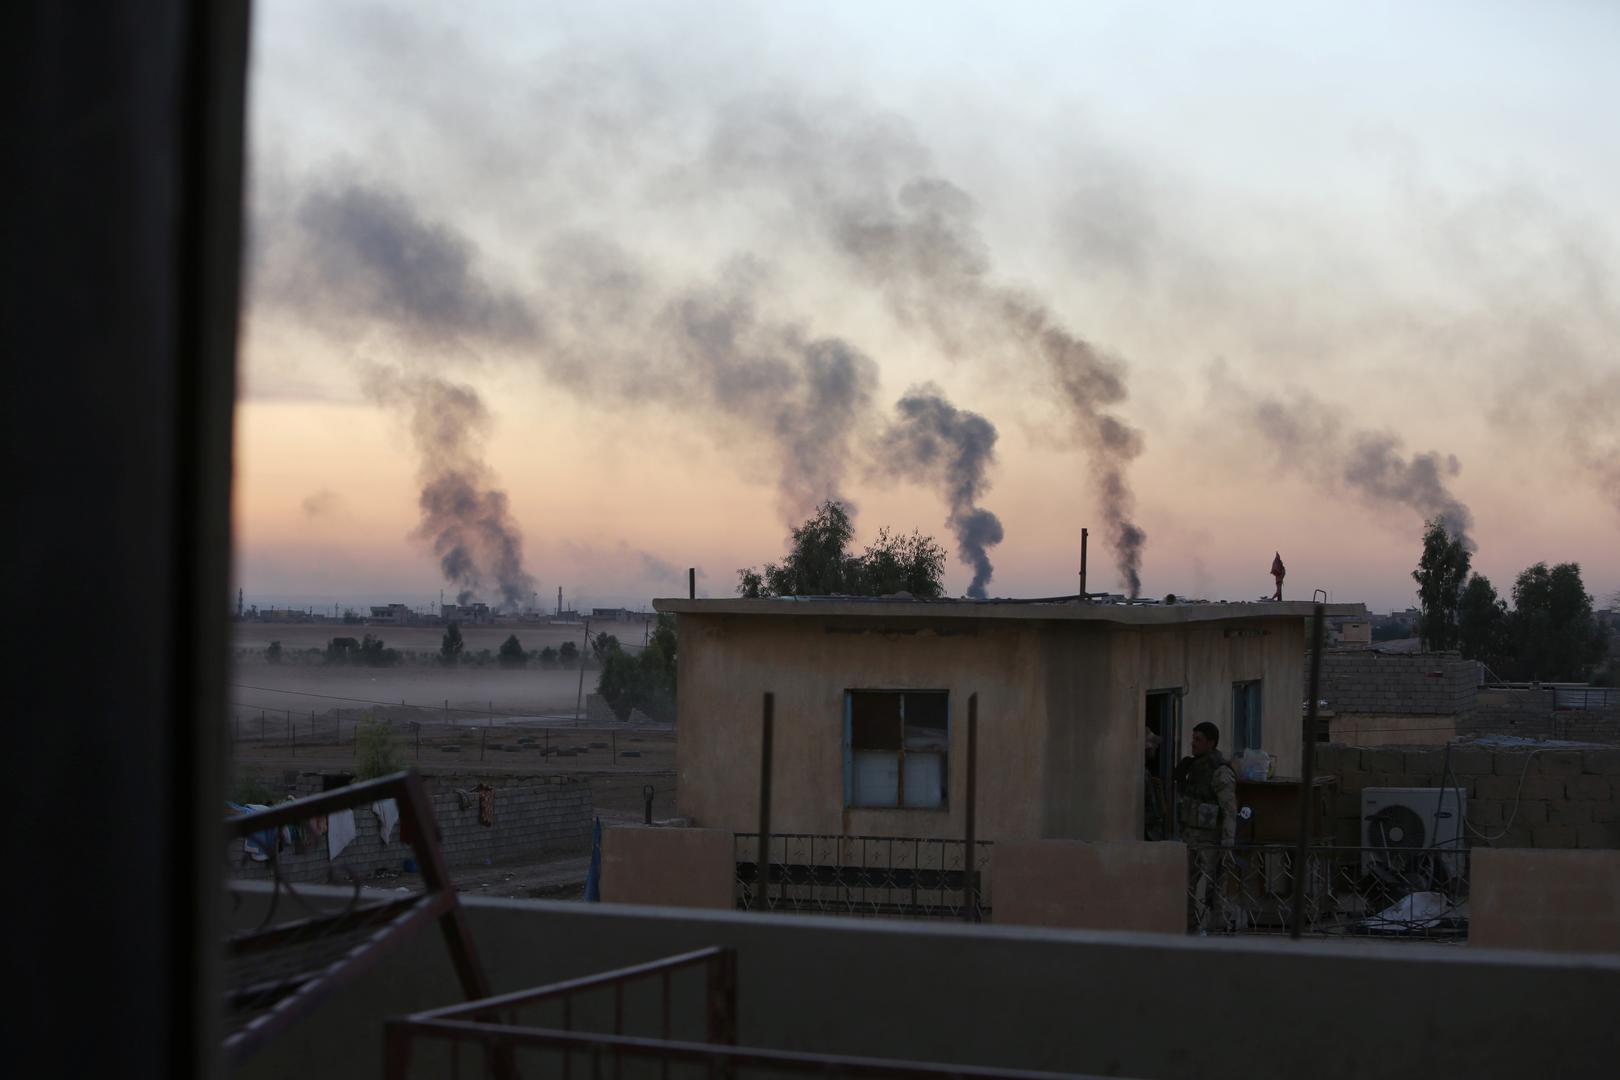 دخان متصاعد أثناء المعركة مع مقاتلي "الدولة الإسلامية" جنوب شرق الموصل، العراق، 3 نوفمبر/تشرين الثاني 2016.